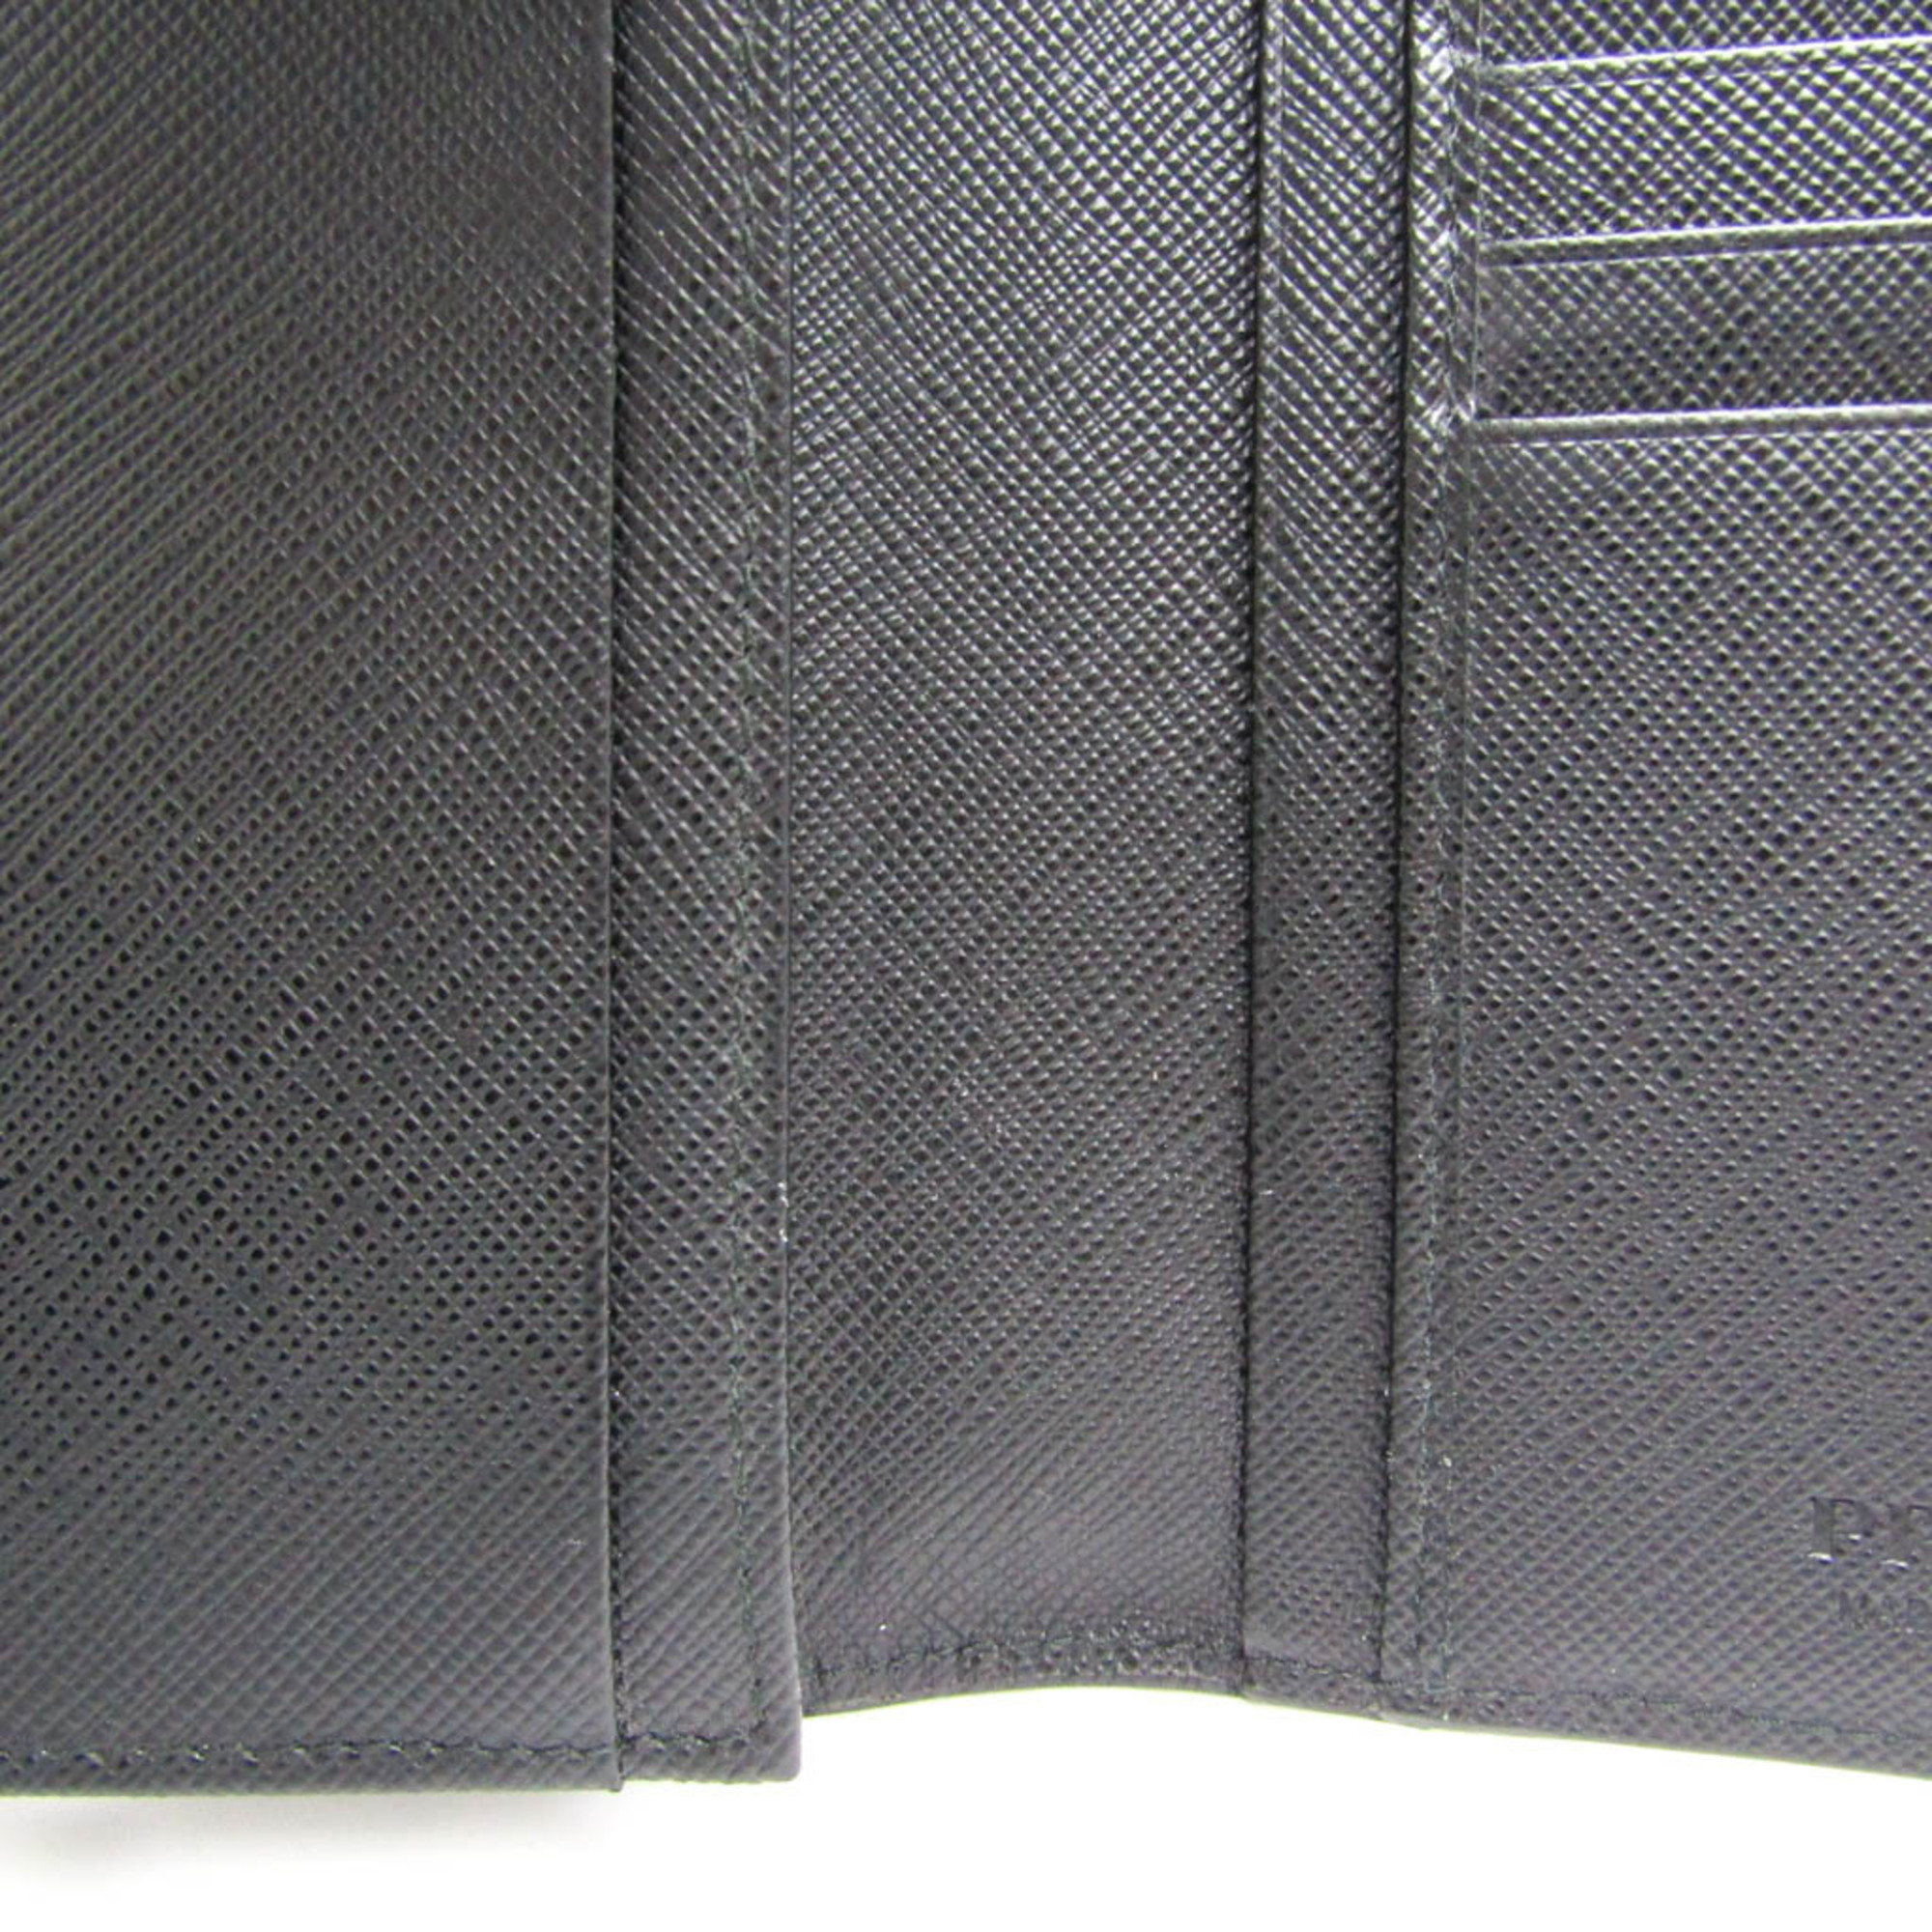 プラダ(Prada) 2MV836 メンズ レザー 長財布（二つ折り） ブラック